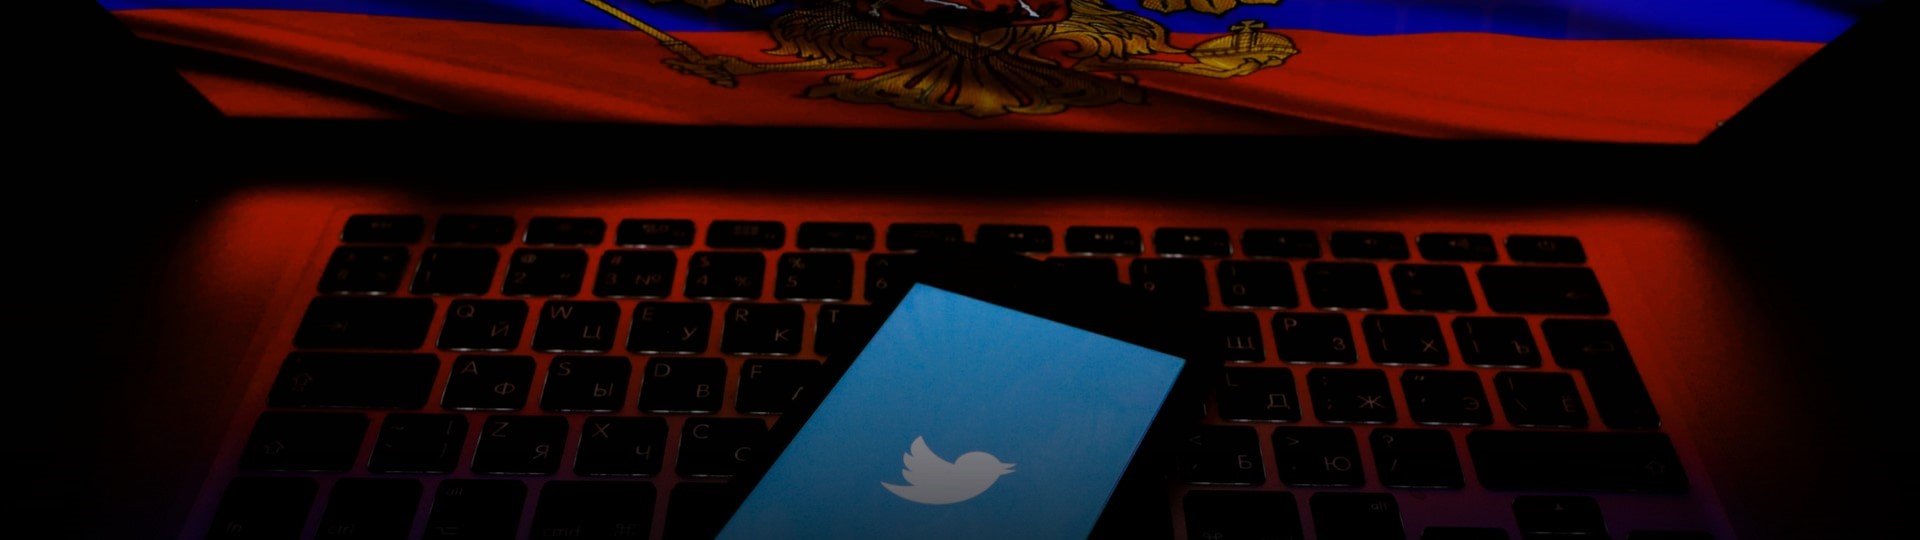 Twitter začal v Rusku odstraňovat obsah, který úřady považují za škodlivý